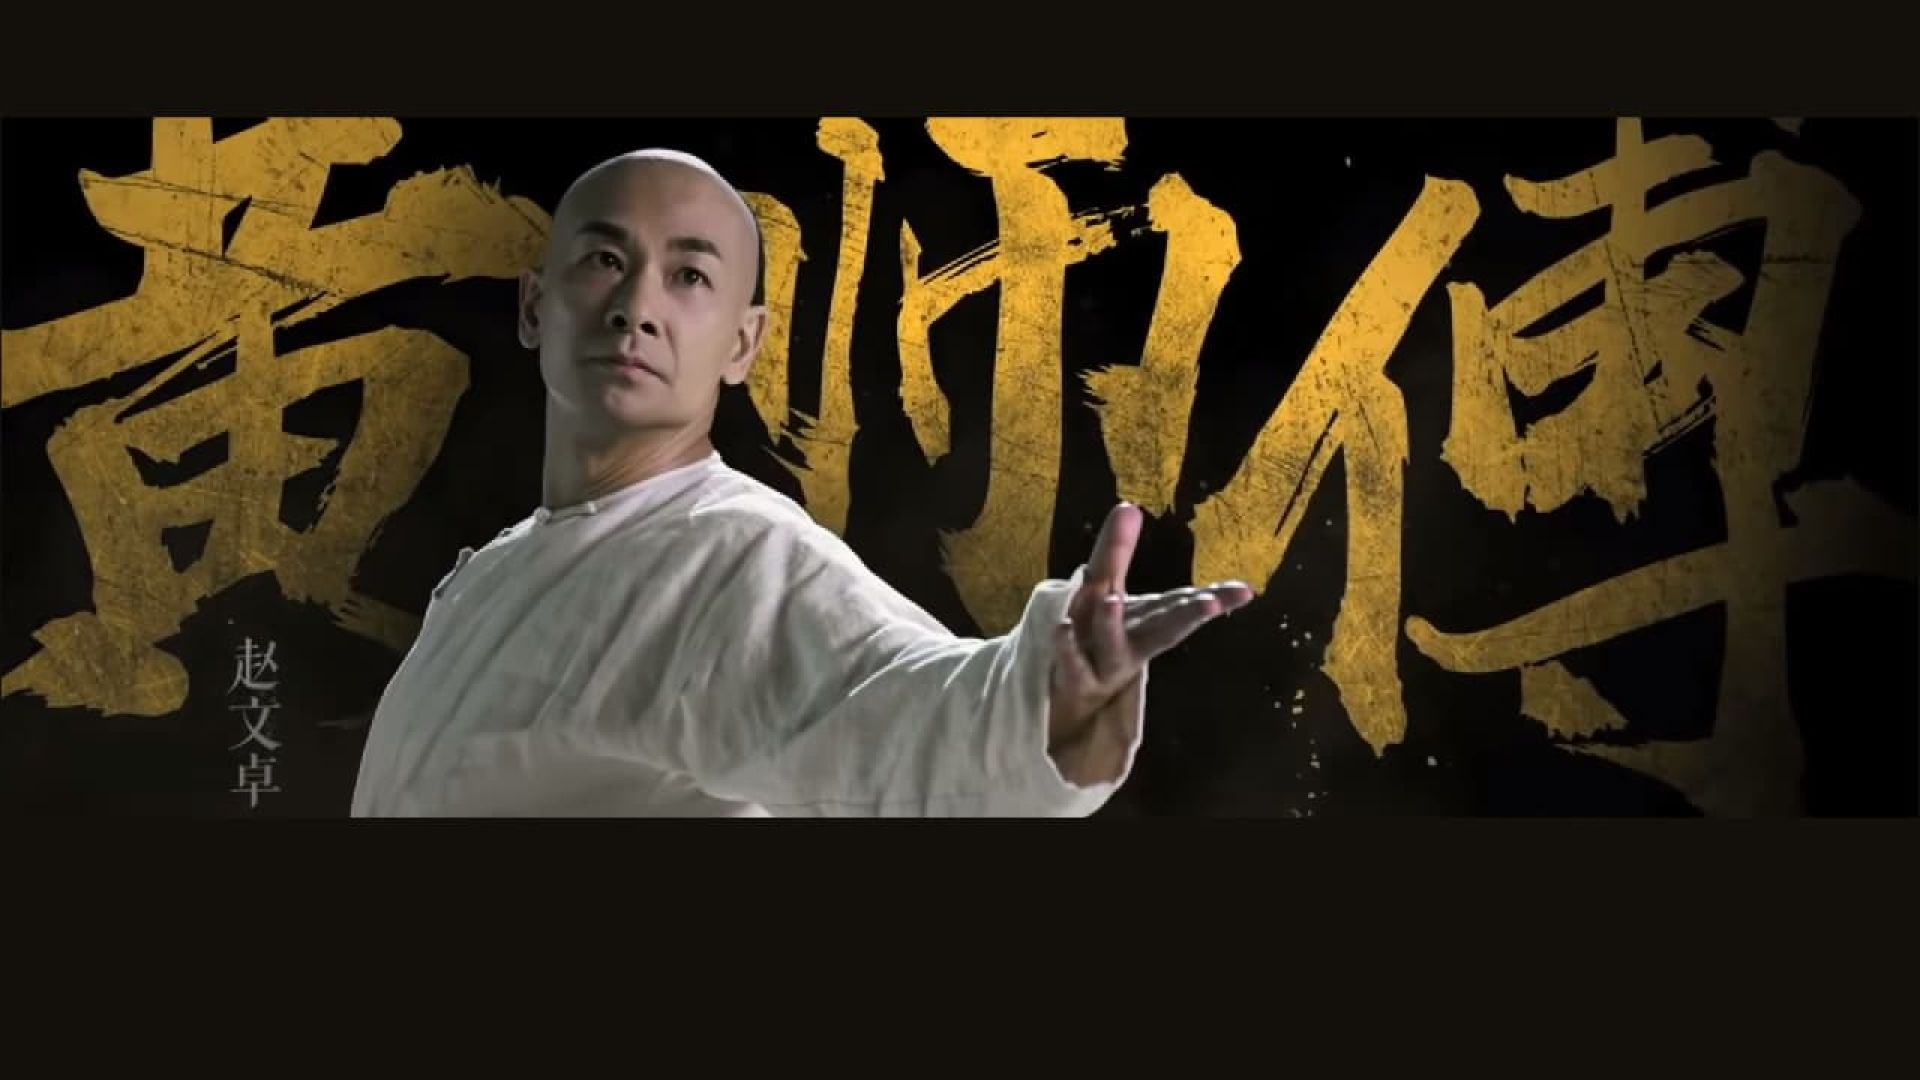 دانلود فیلم Kung Fu League 2018